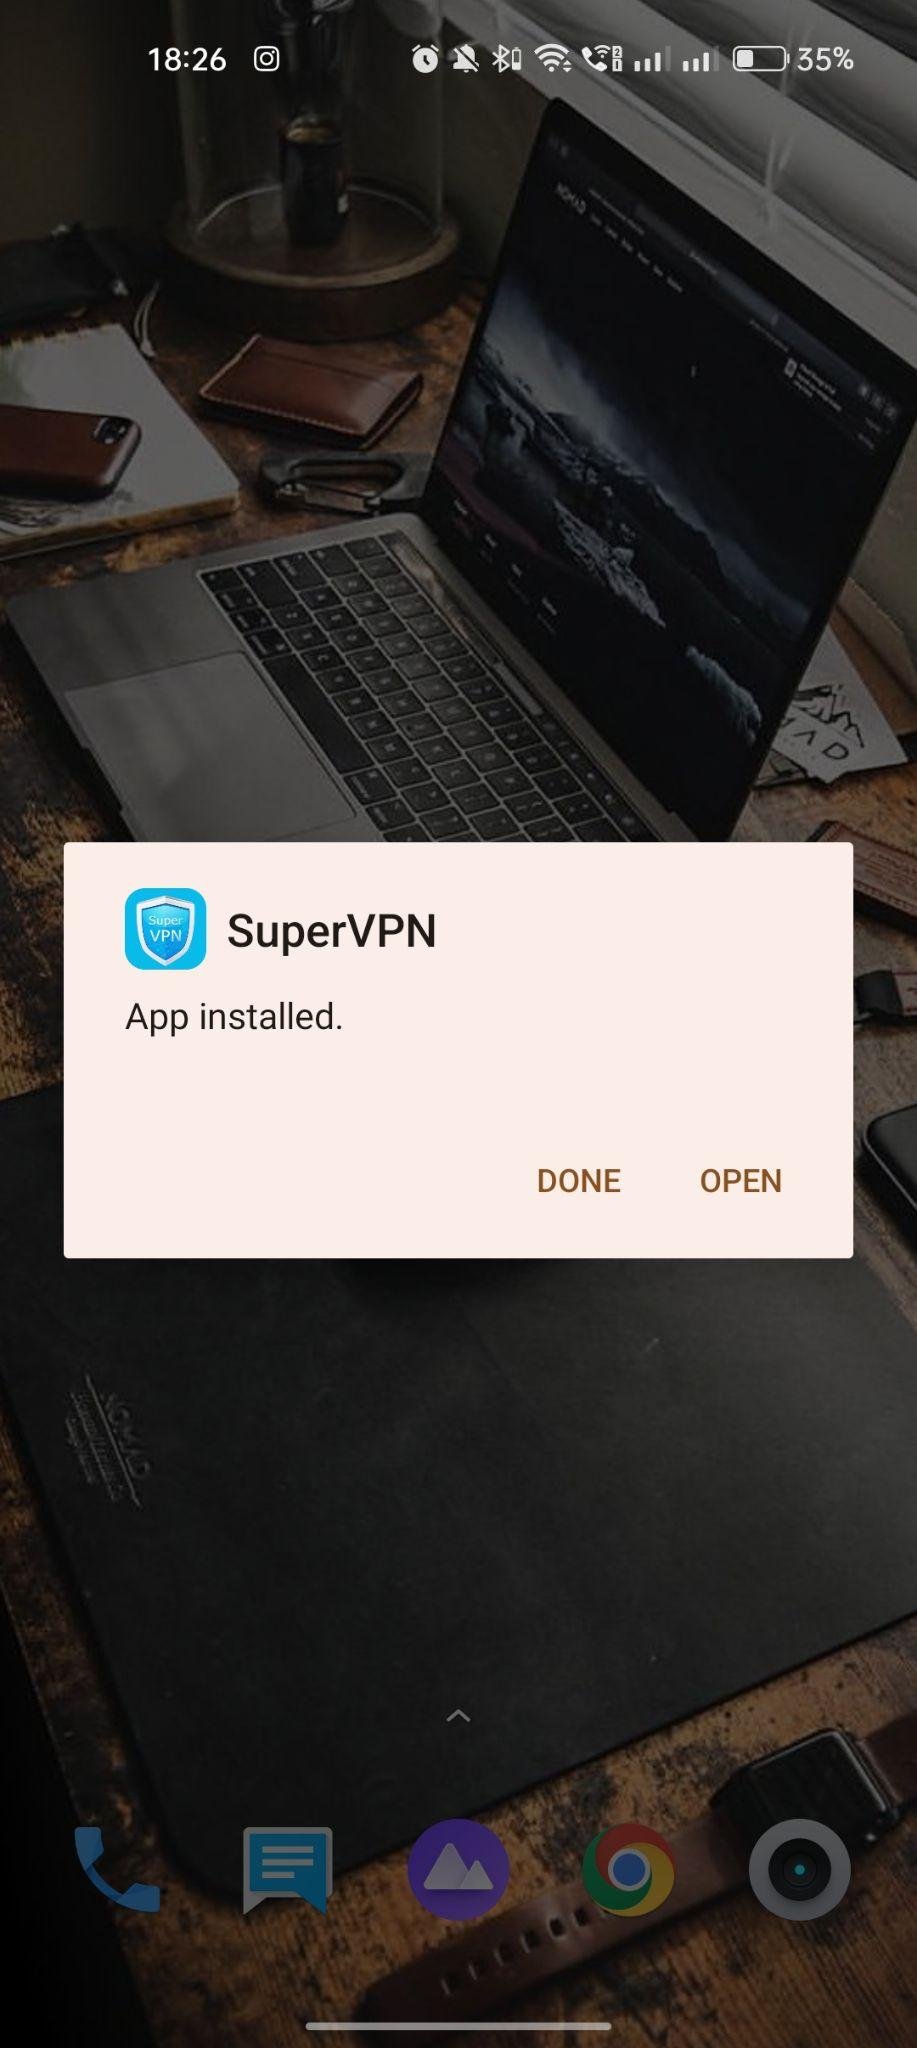 SuperVPN apk installed